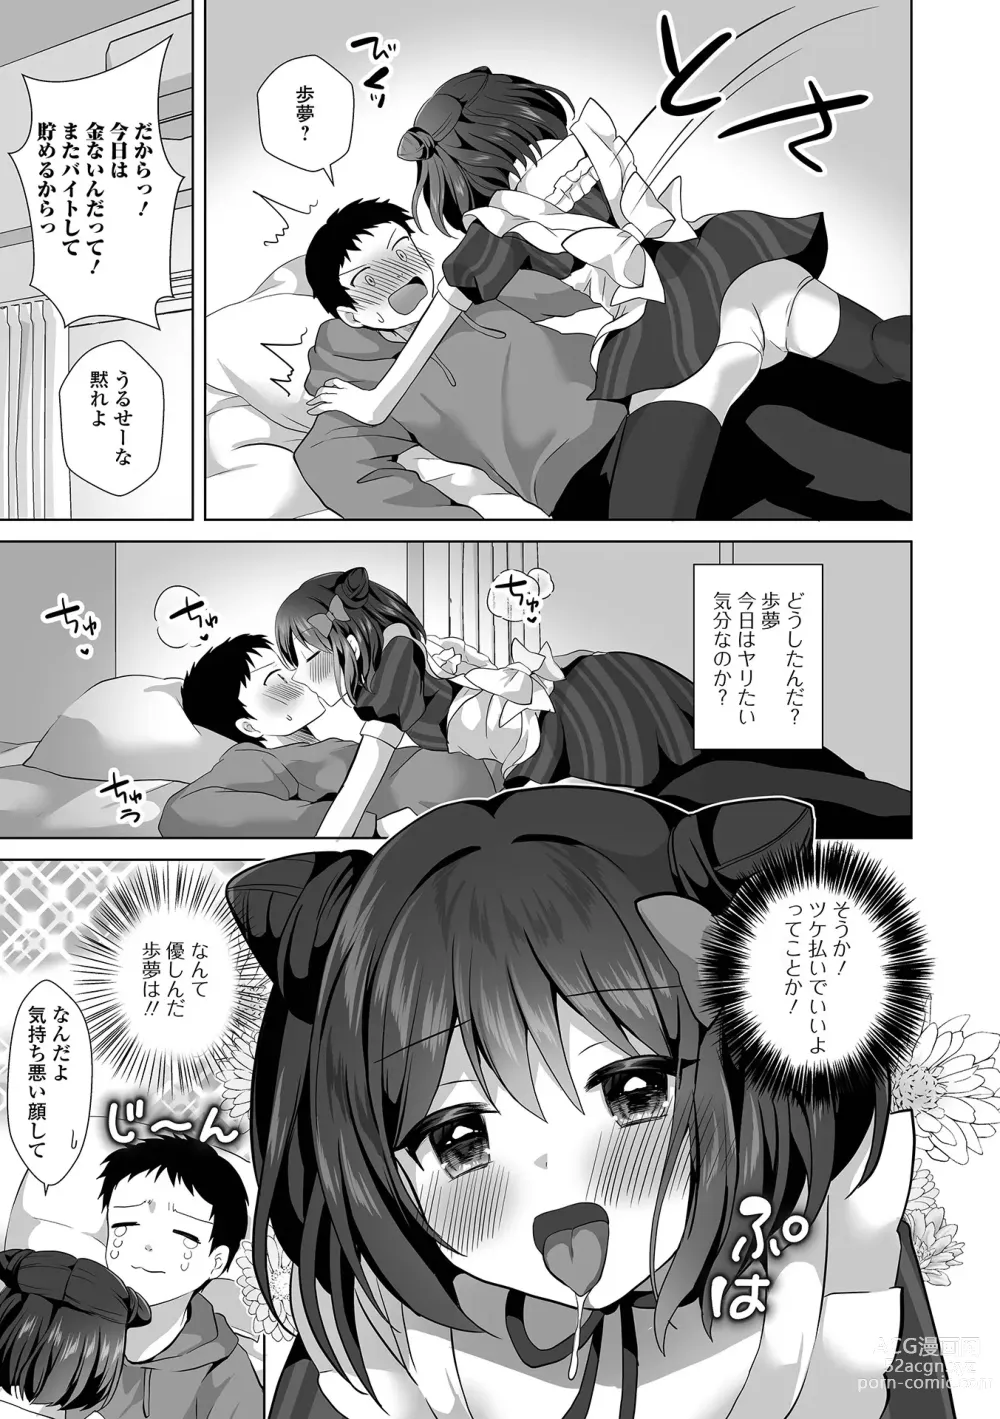 Page 9 of manga Gekkan Web Otoko no Ko-llection! S Vol. 93